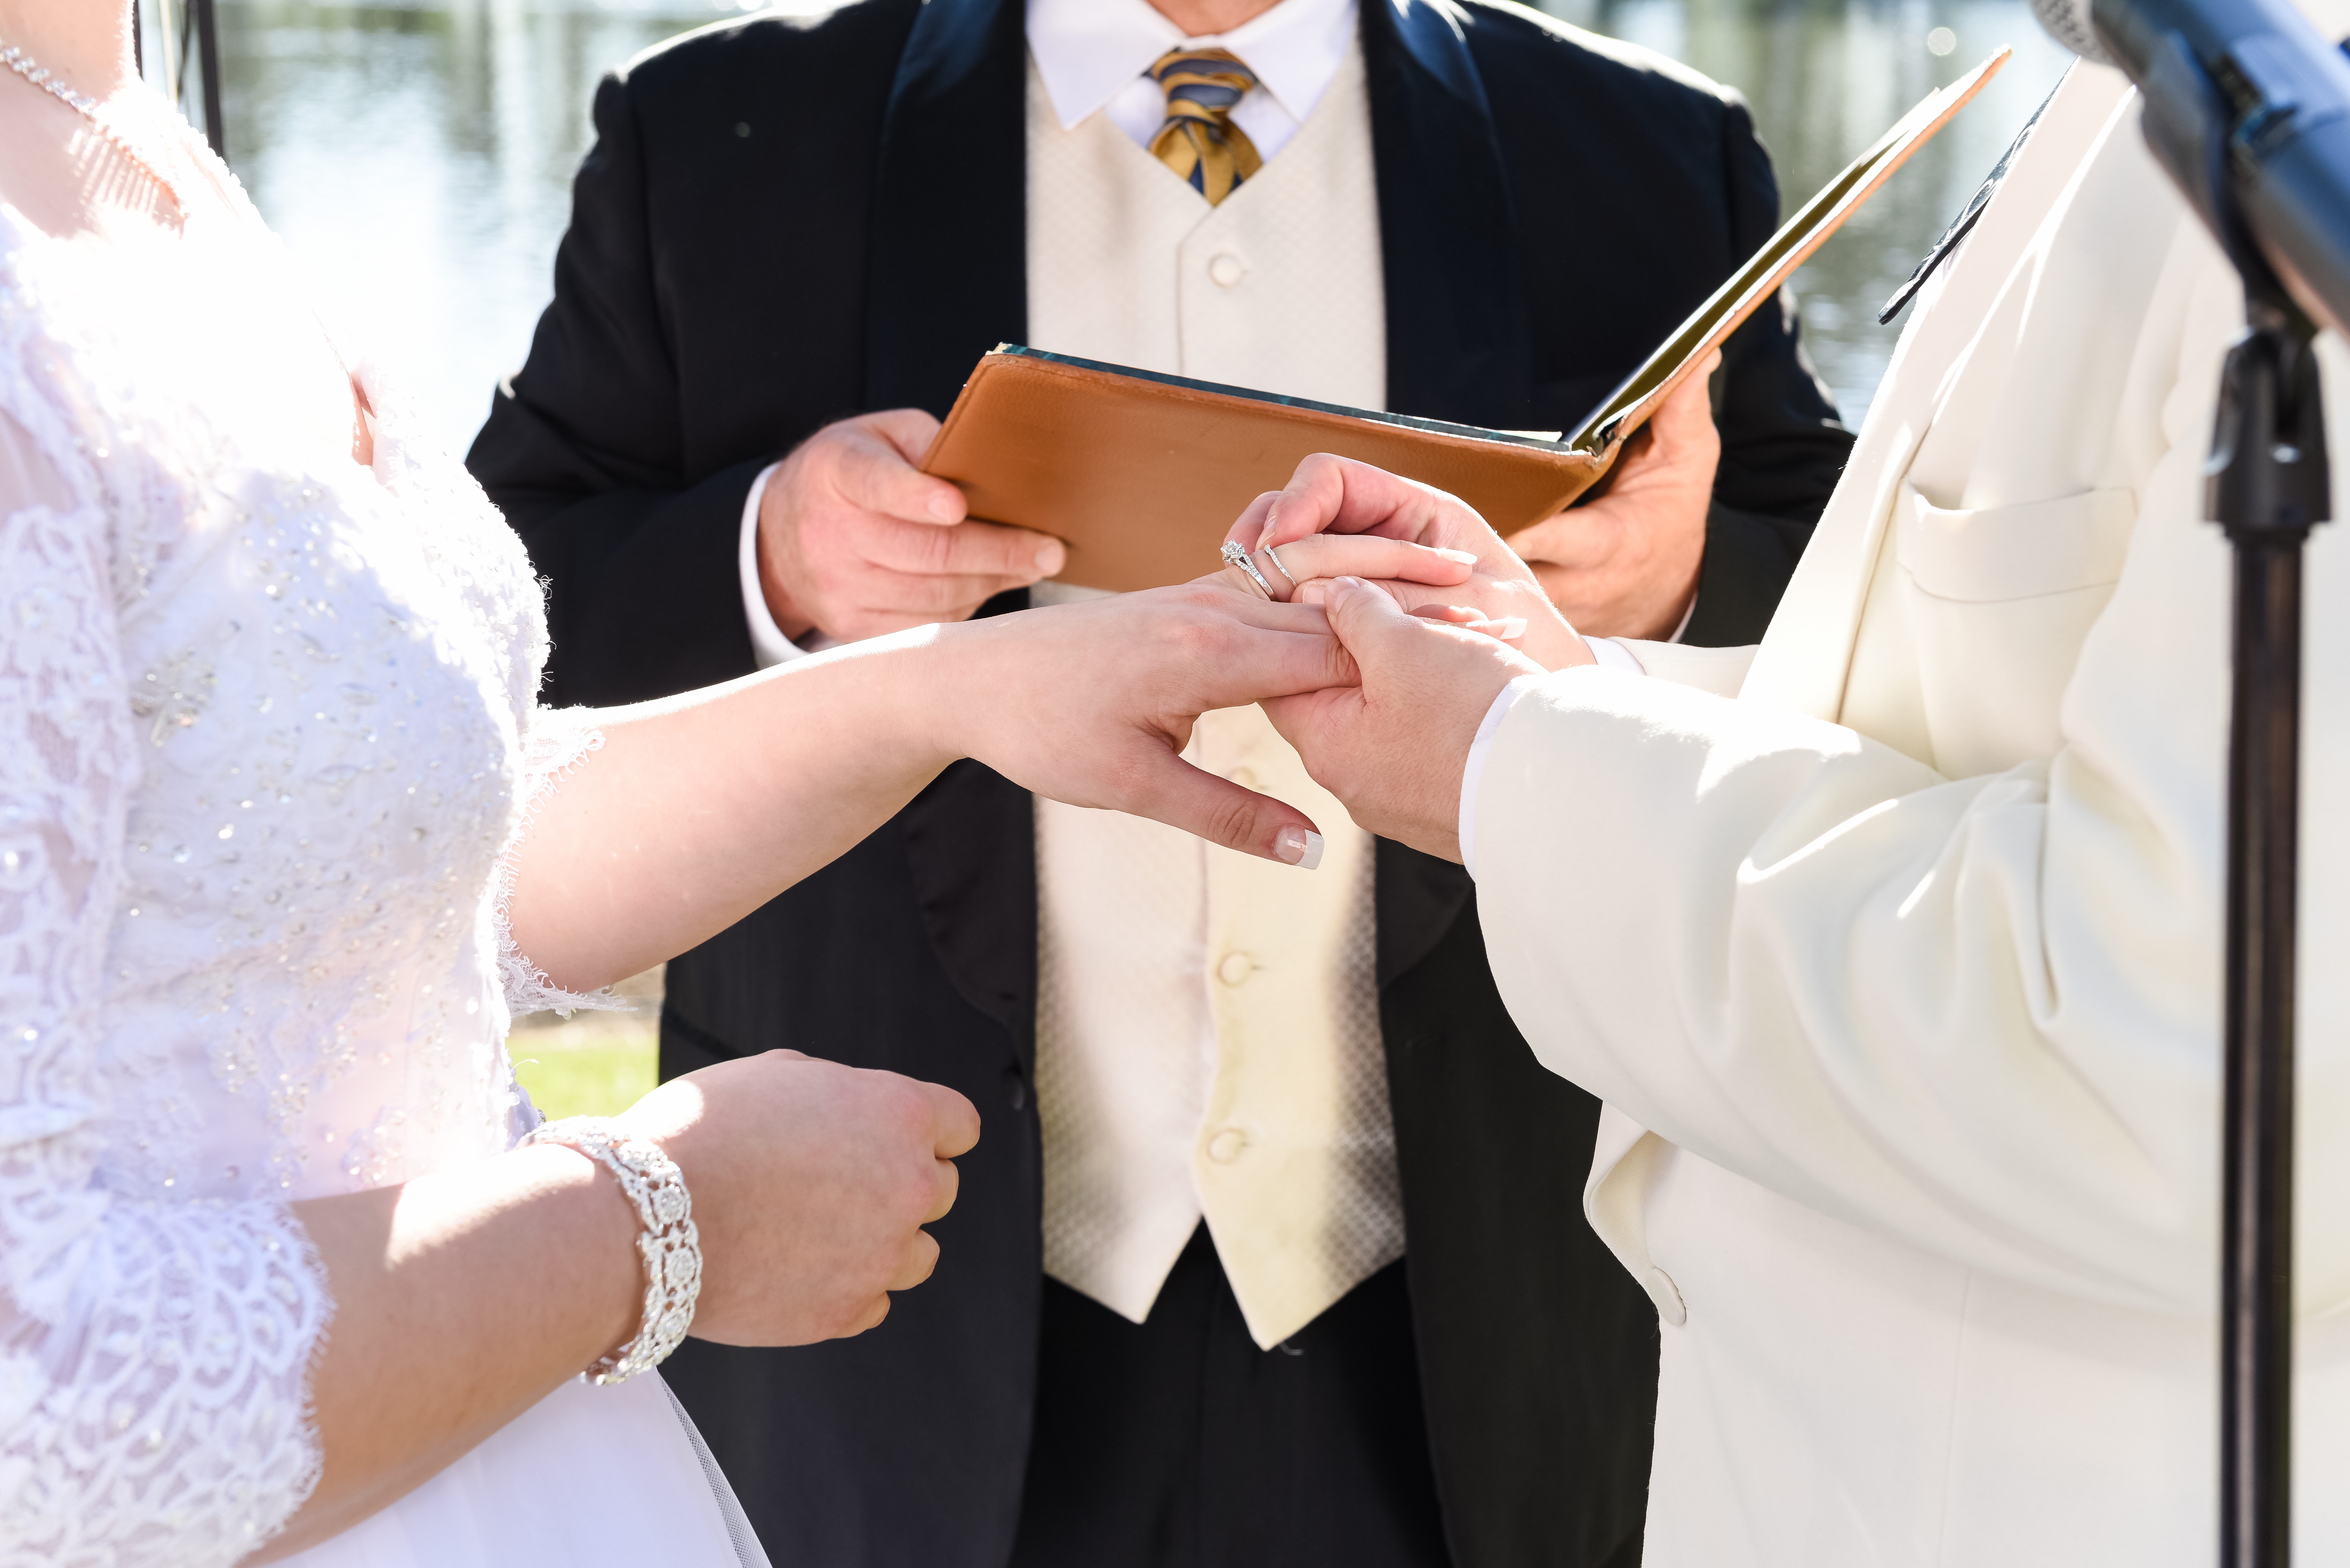 Un couple échangeant des anneaux devant un officiant de mariage | Source : Shutterstock